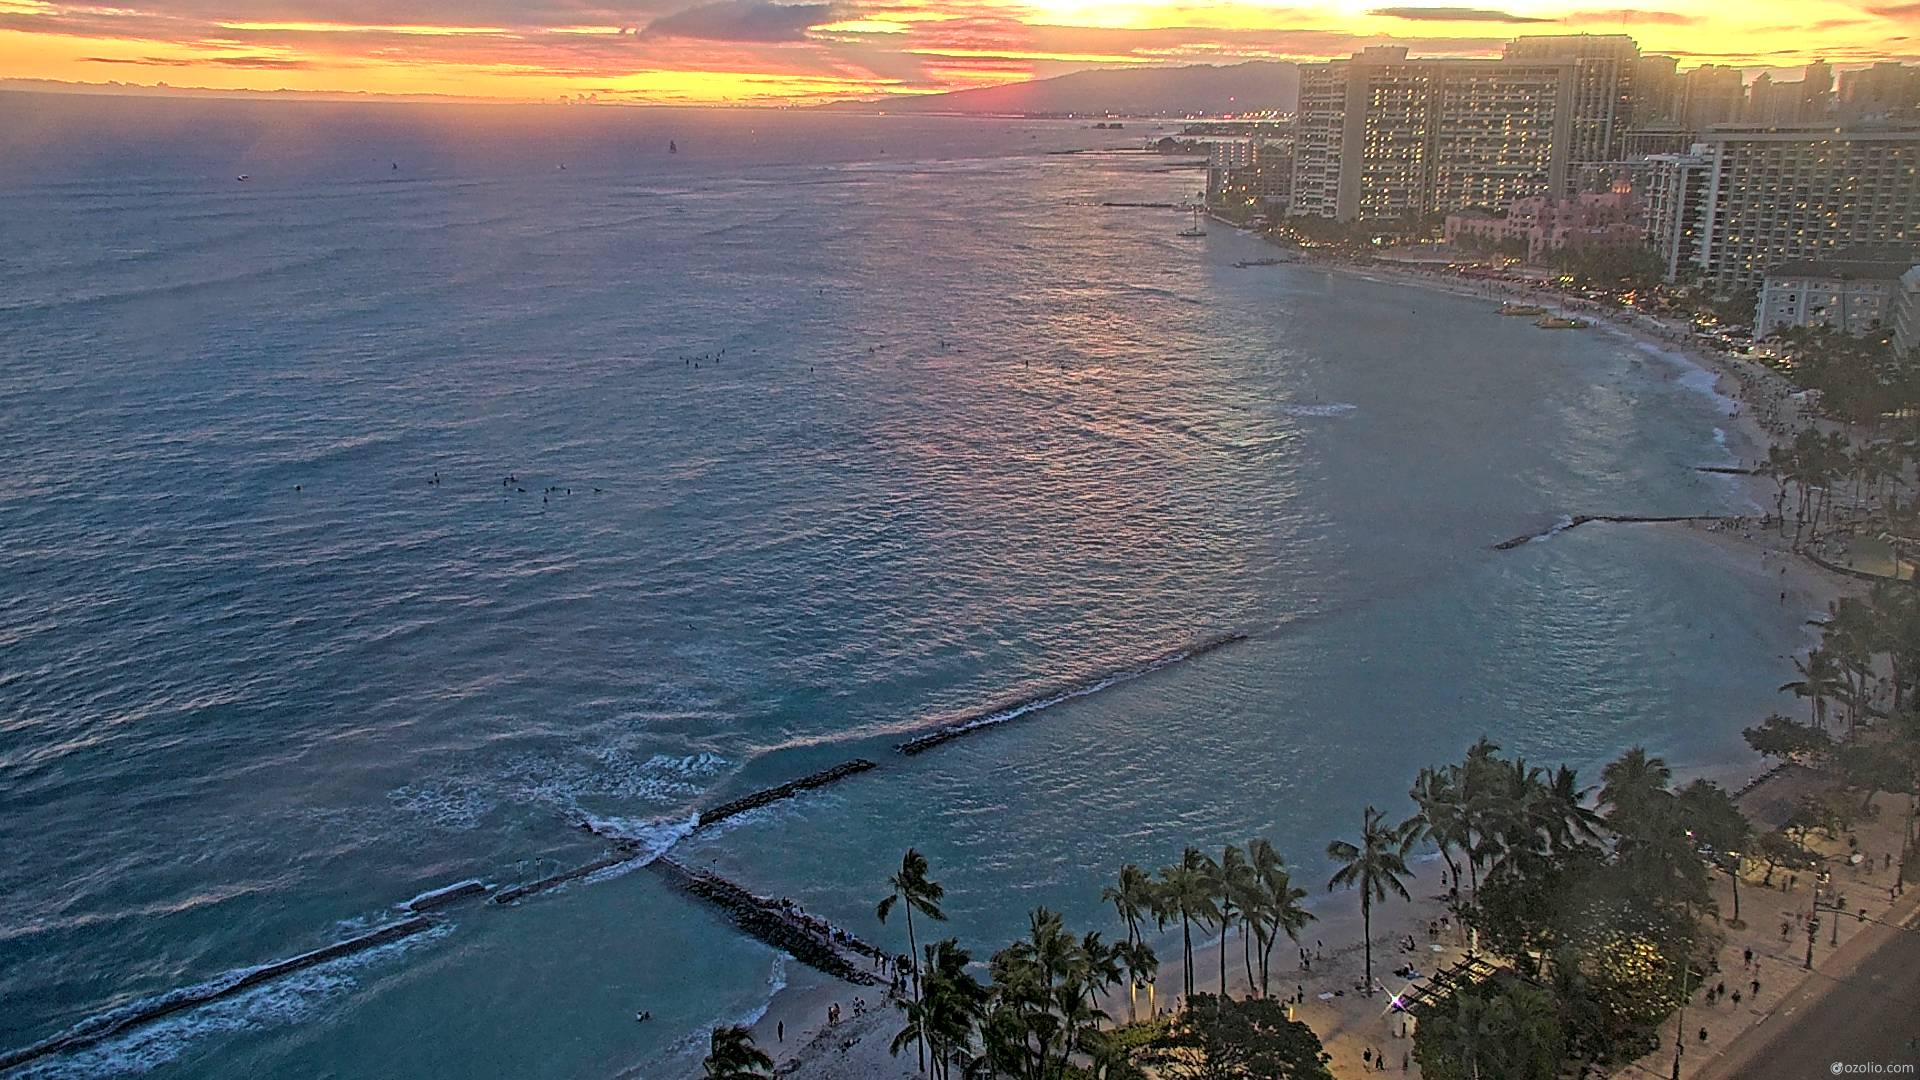 Waikiki Beach, Hawaii Mer. 19:14